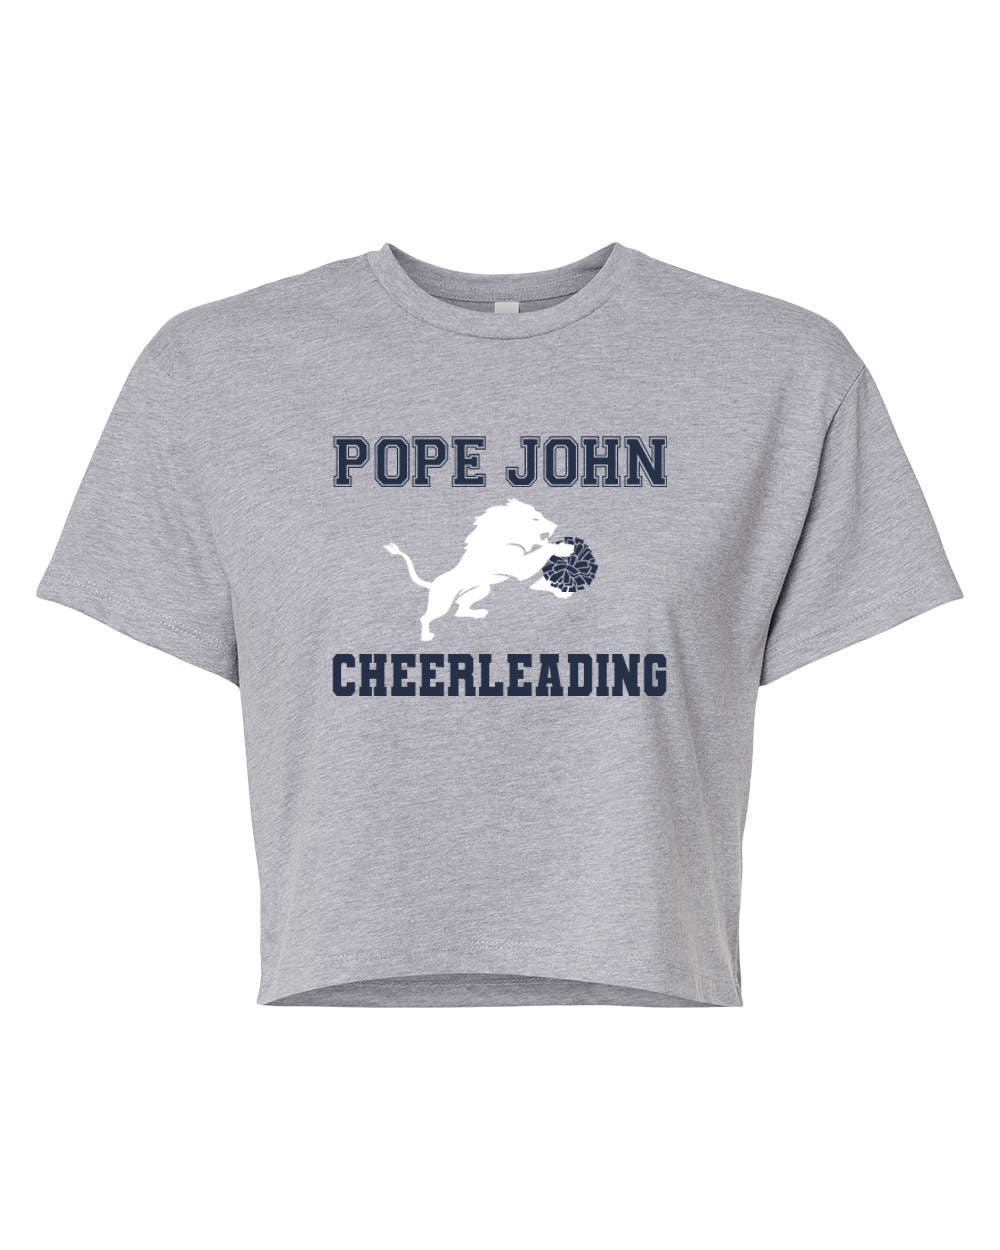 Pope John Cheer Design 1 Crop Top